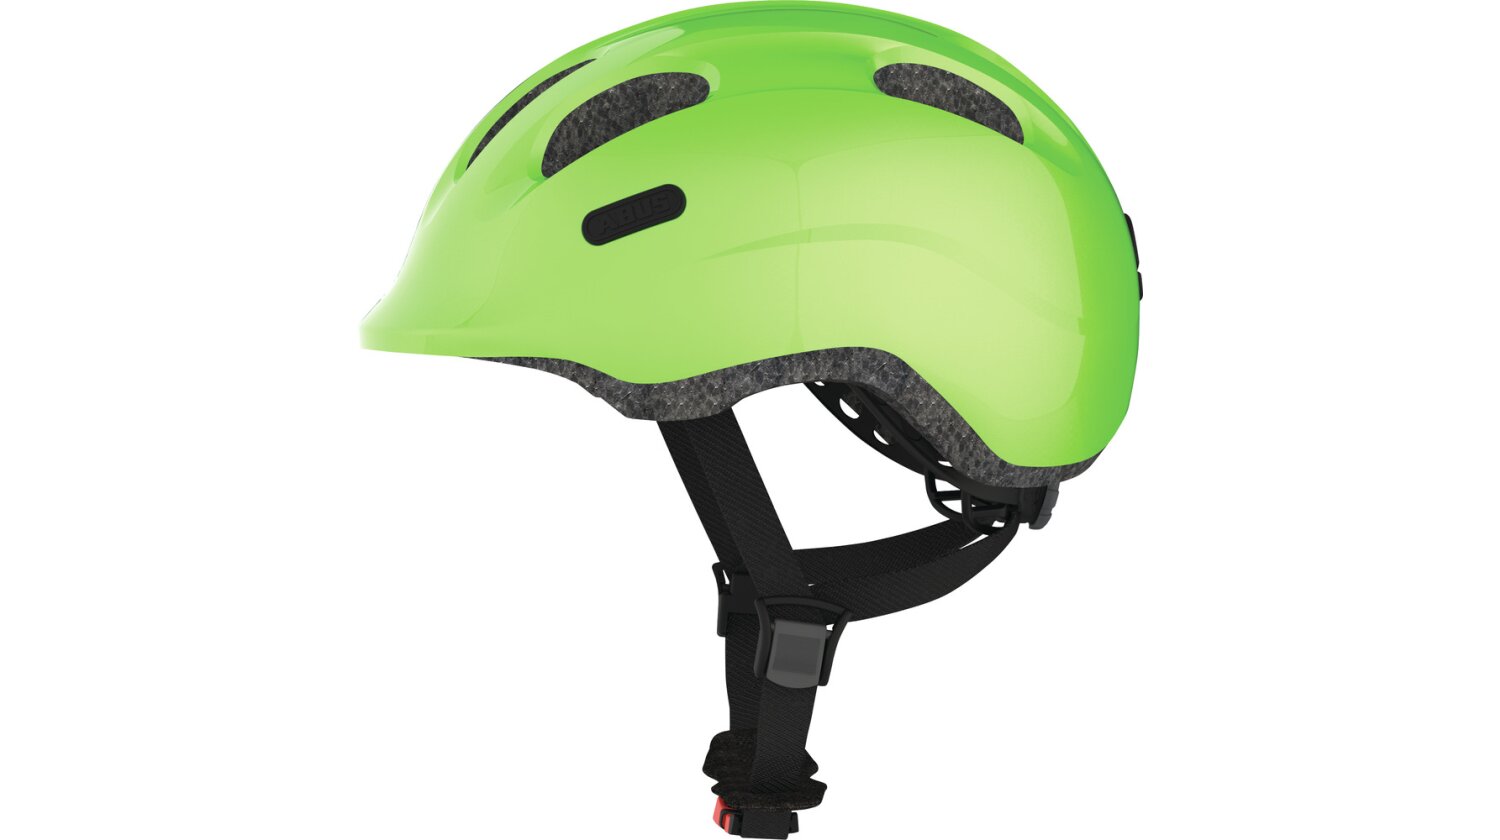 Abus Smiley 2.0 Kinder-Helm sparkling green M (50-55 cm)